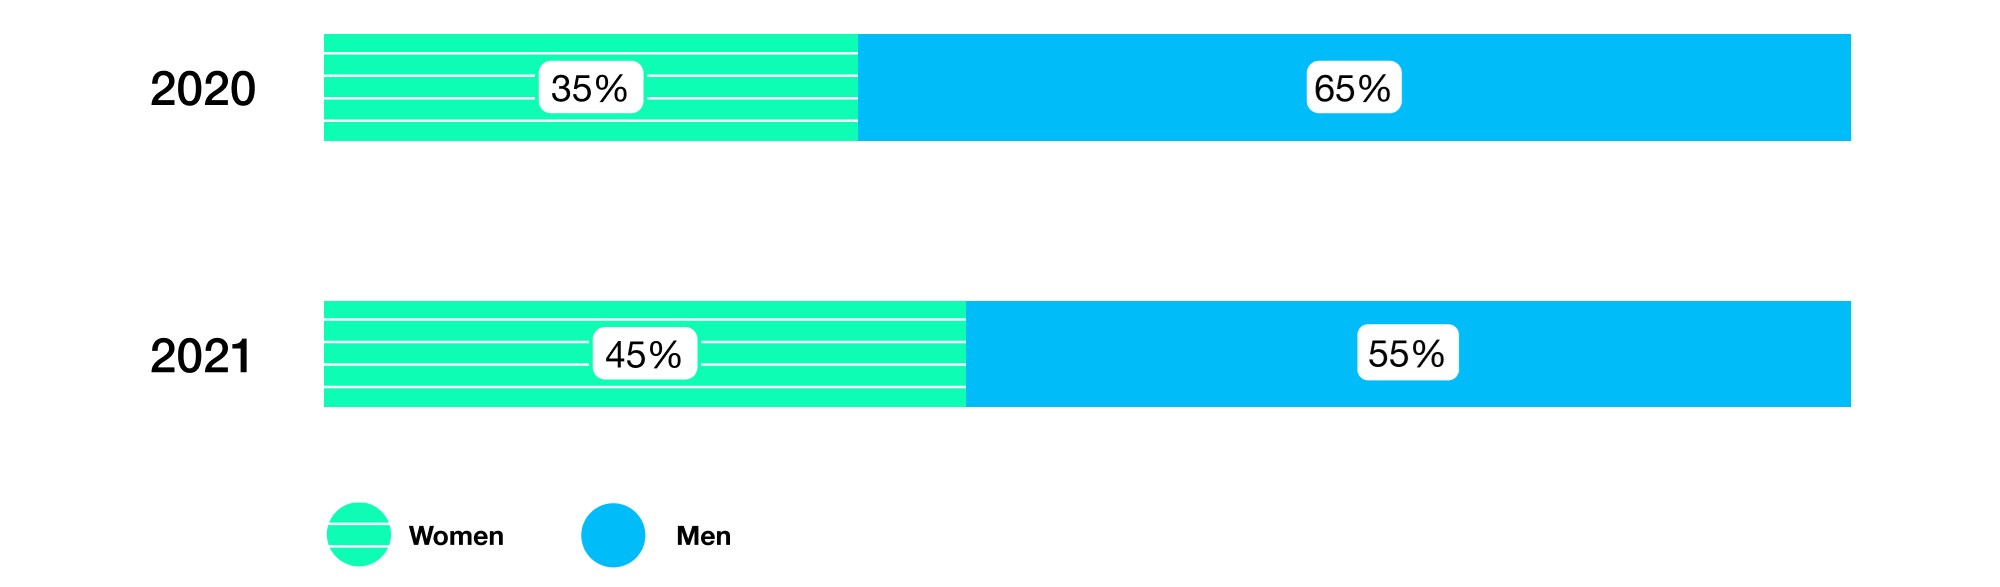 Bar graph showing : 2020 hires, 35% women (green bar), 65% men (blue bar). 2021 hires, 45% women (green bar), 55% men (blue bar)